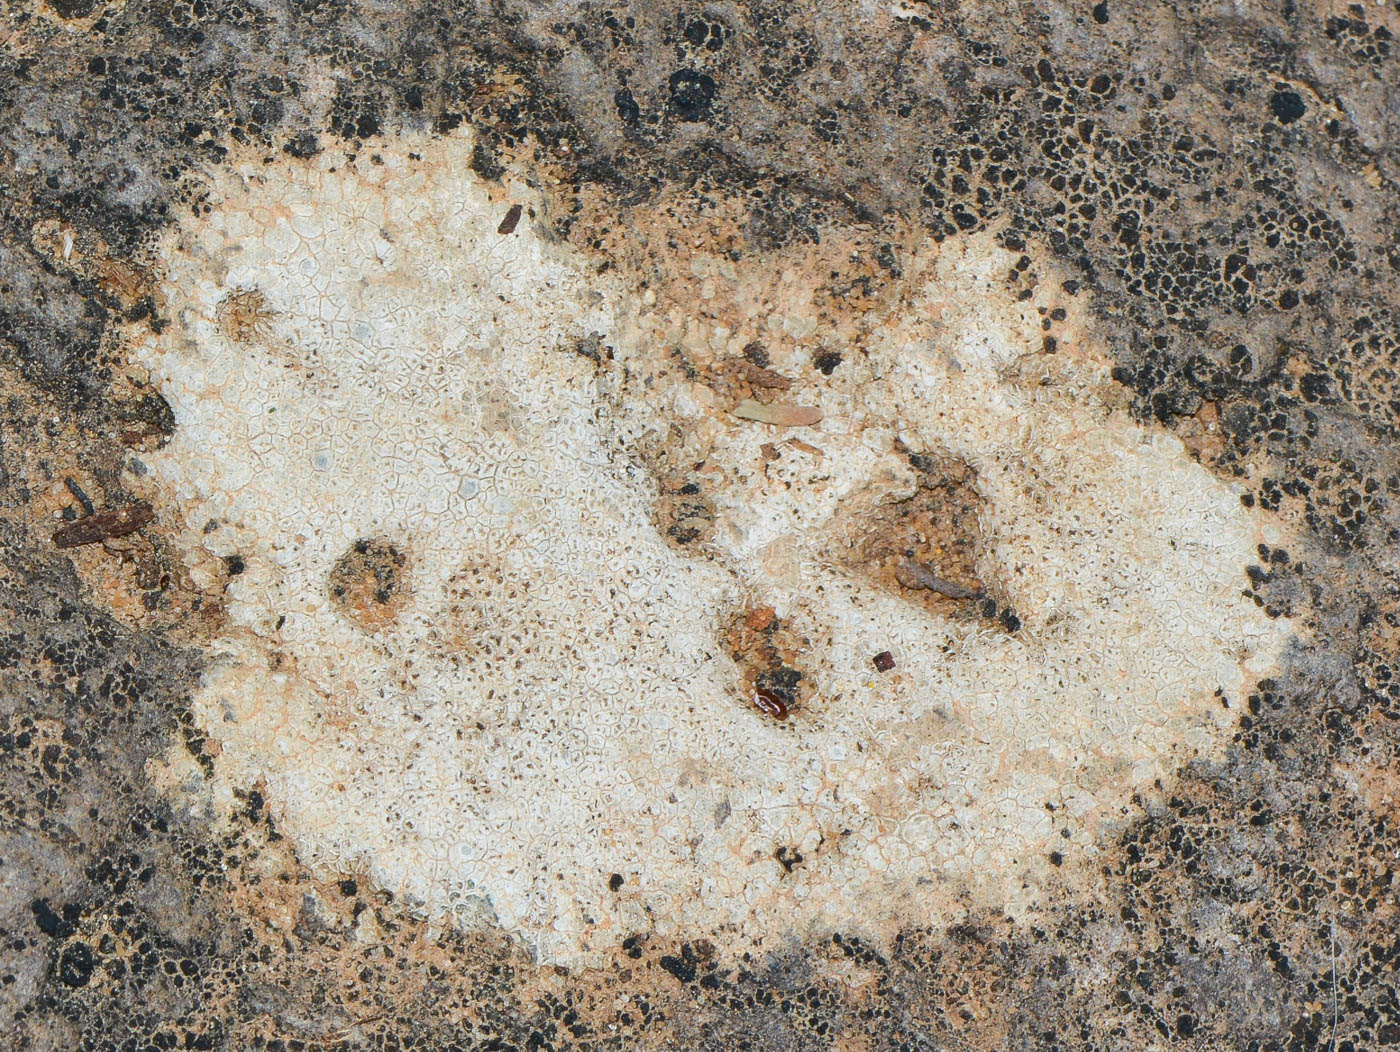 Image of Aspicilia calcarea specimen.